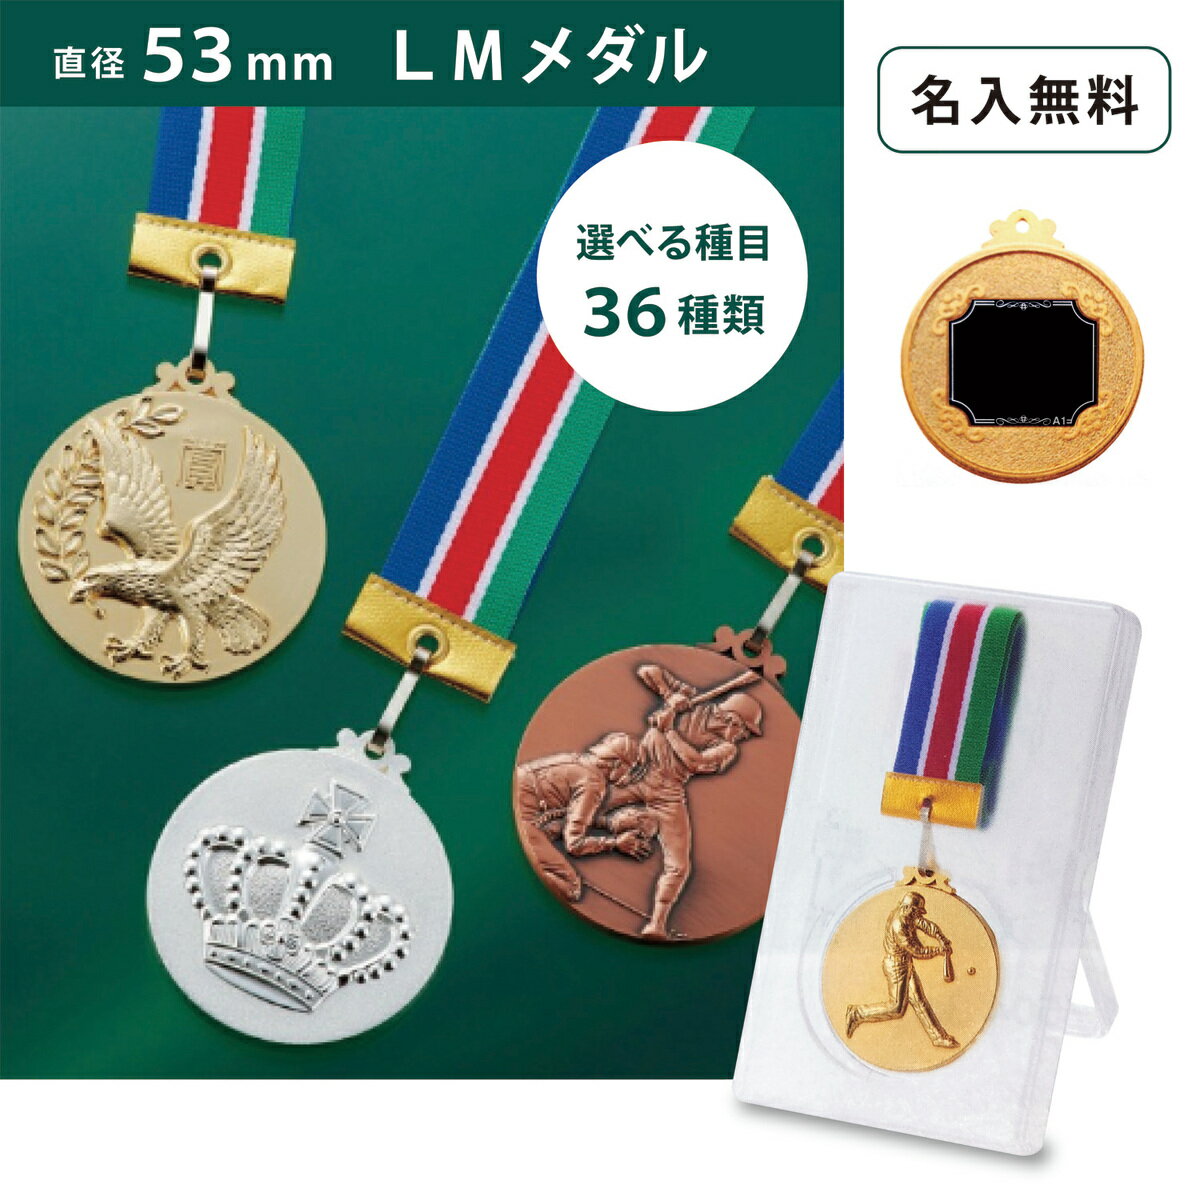 SMメダル40mm 男子バレーボール（プラケース・首掛けリボンあり）SM7116A/A-1